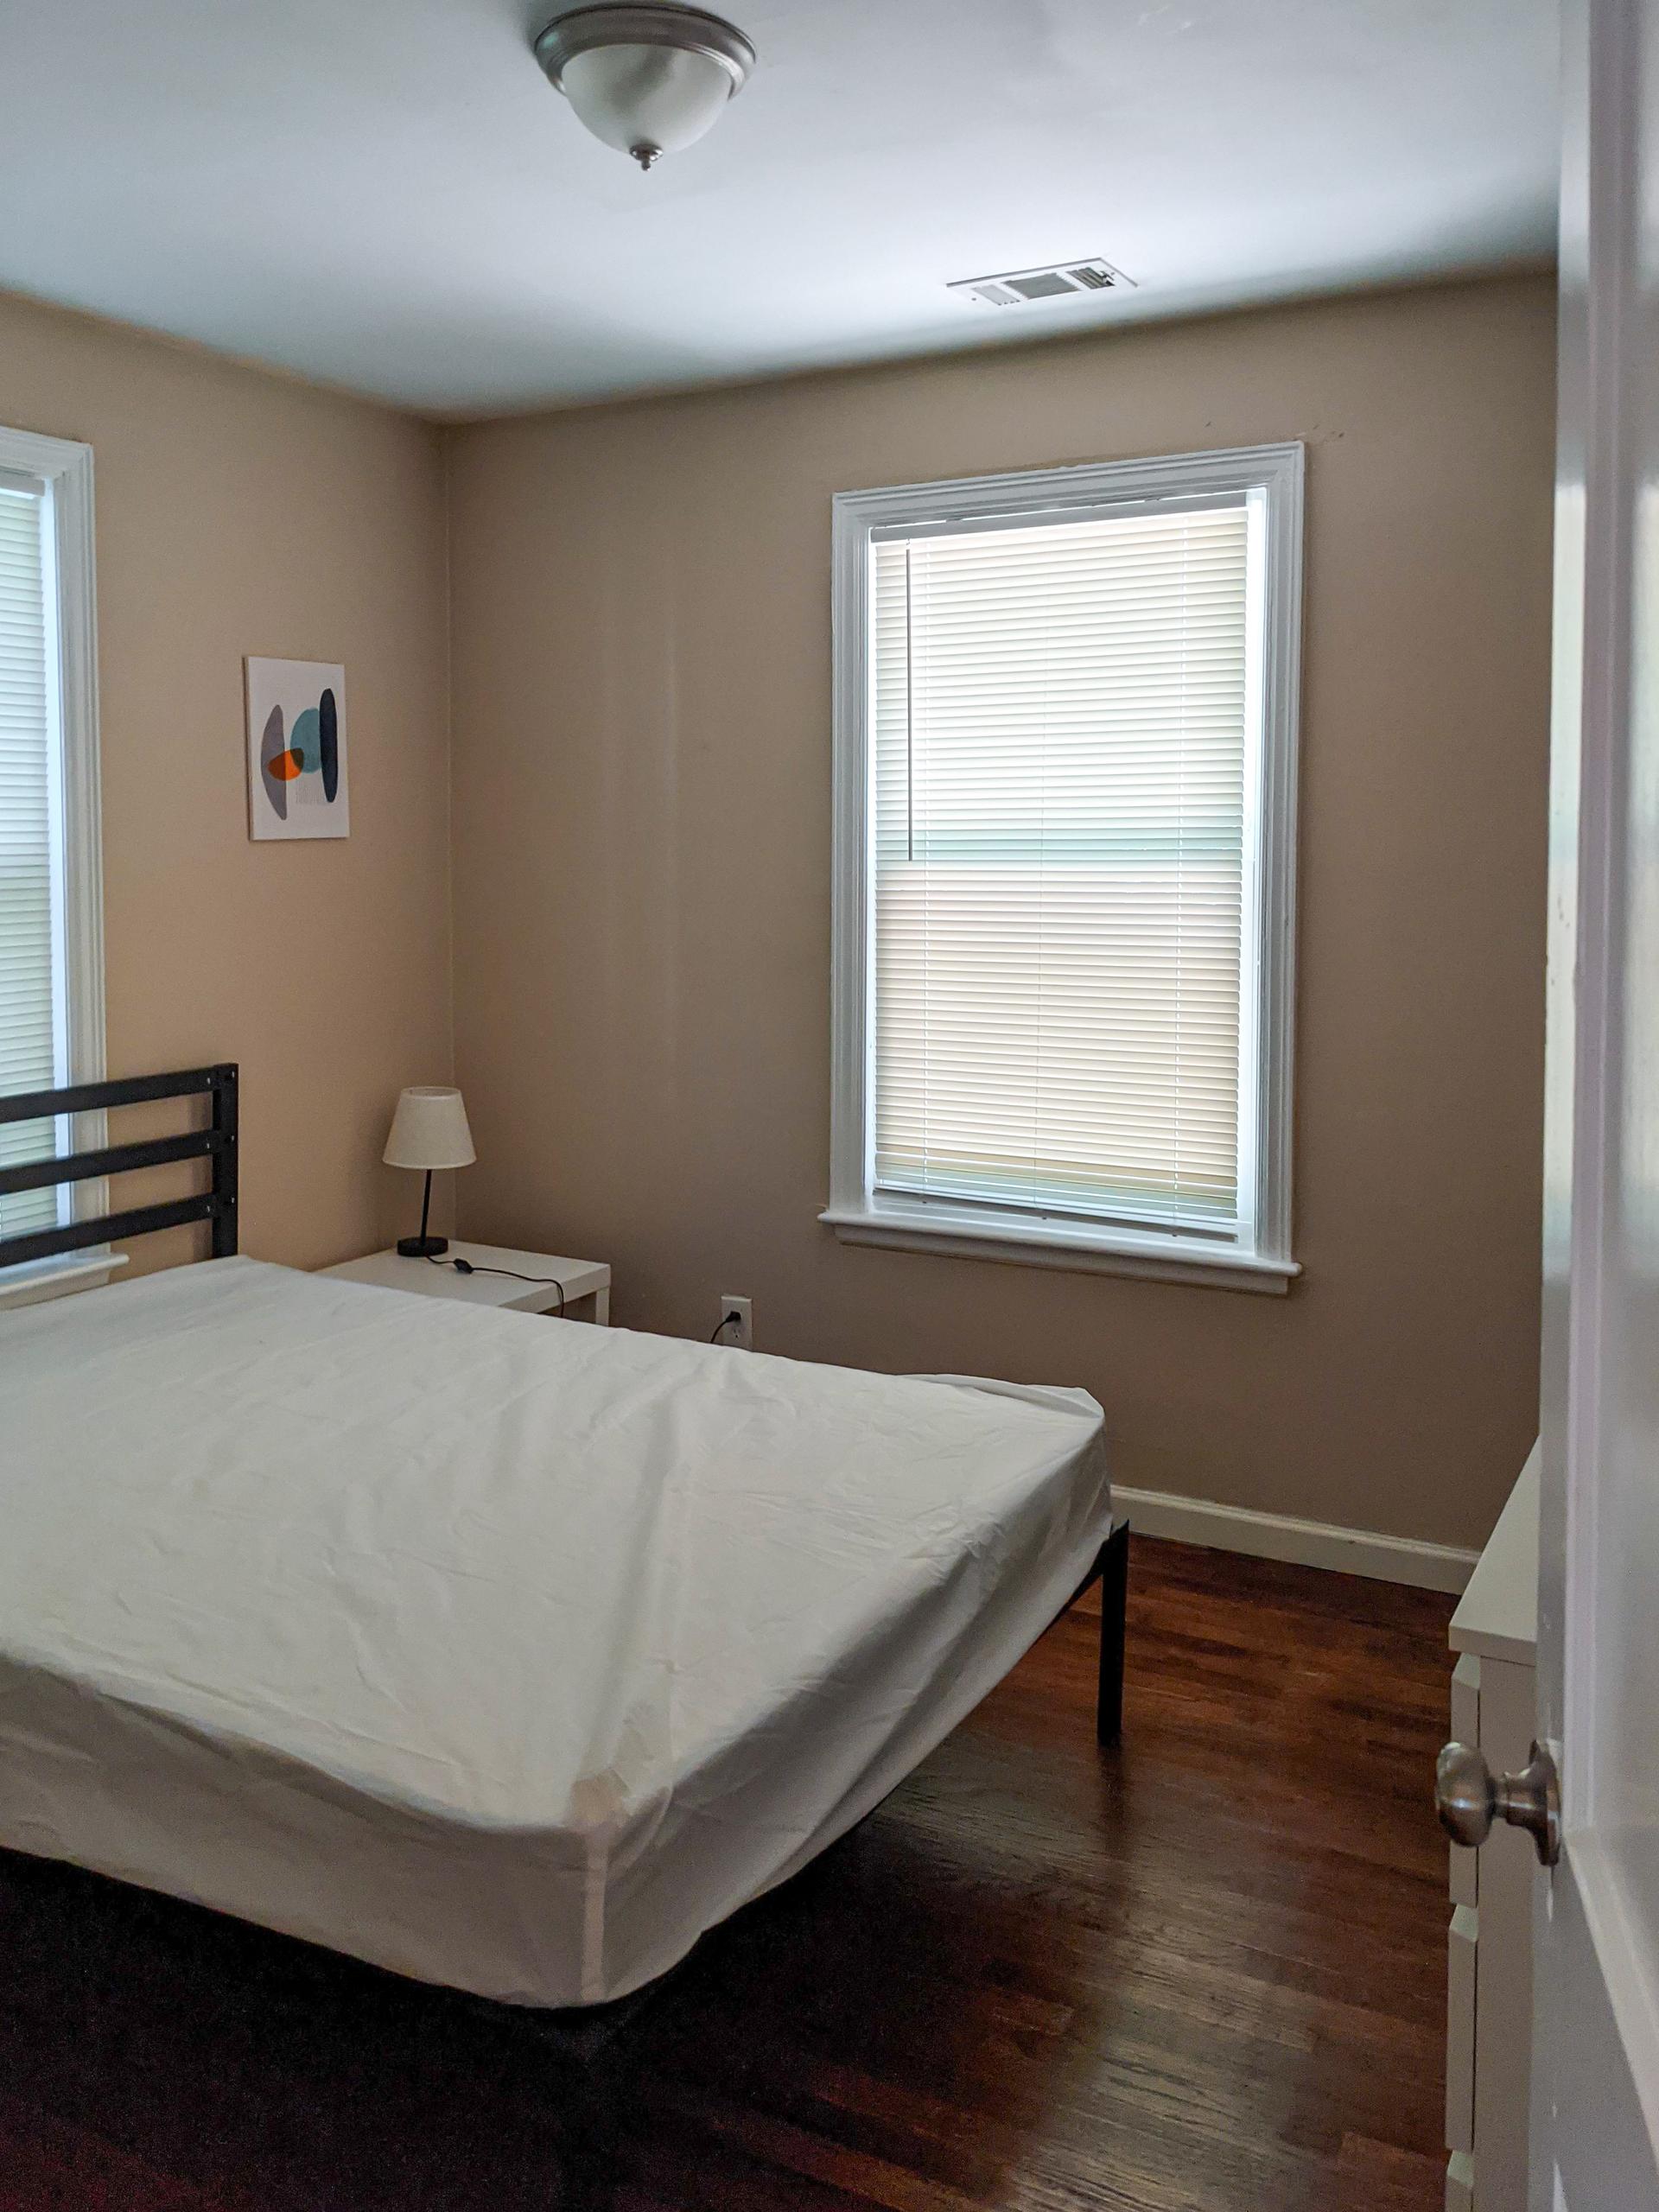 Room #5 - Bed, nightstand, lamp, window